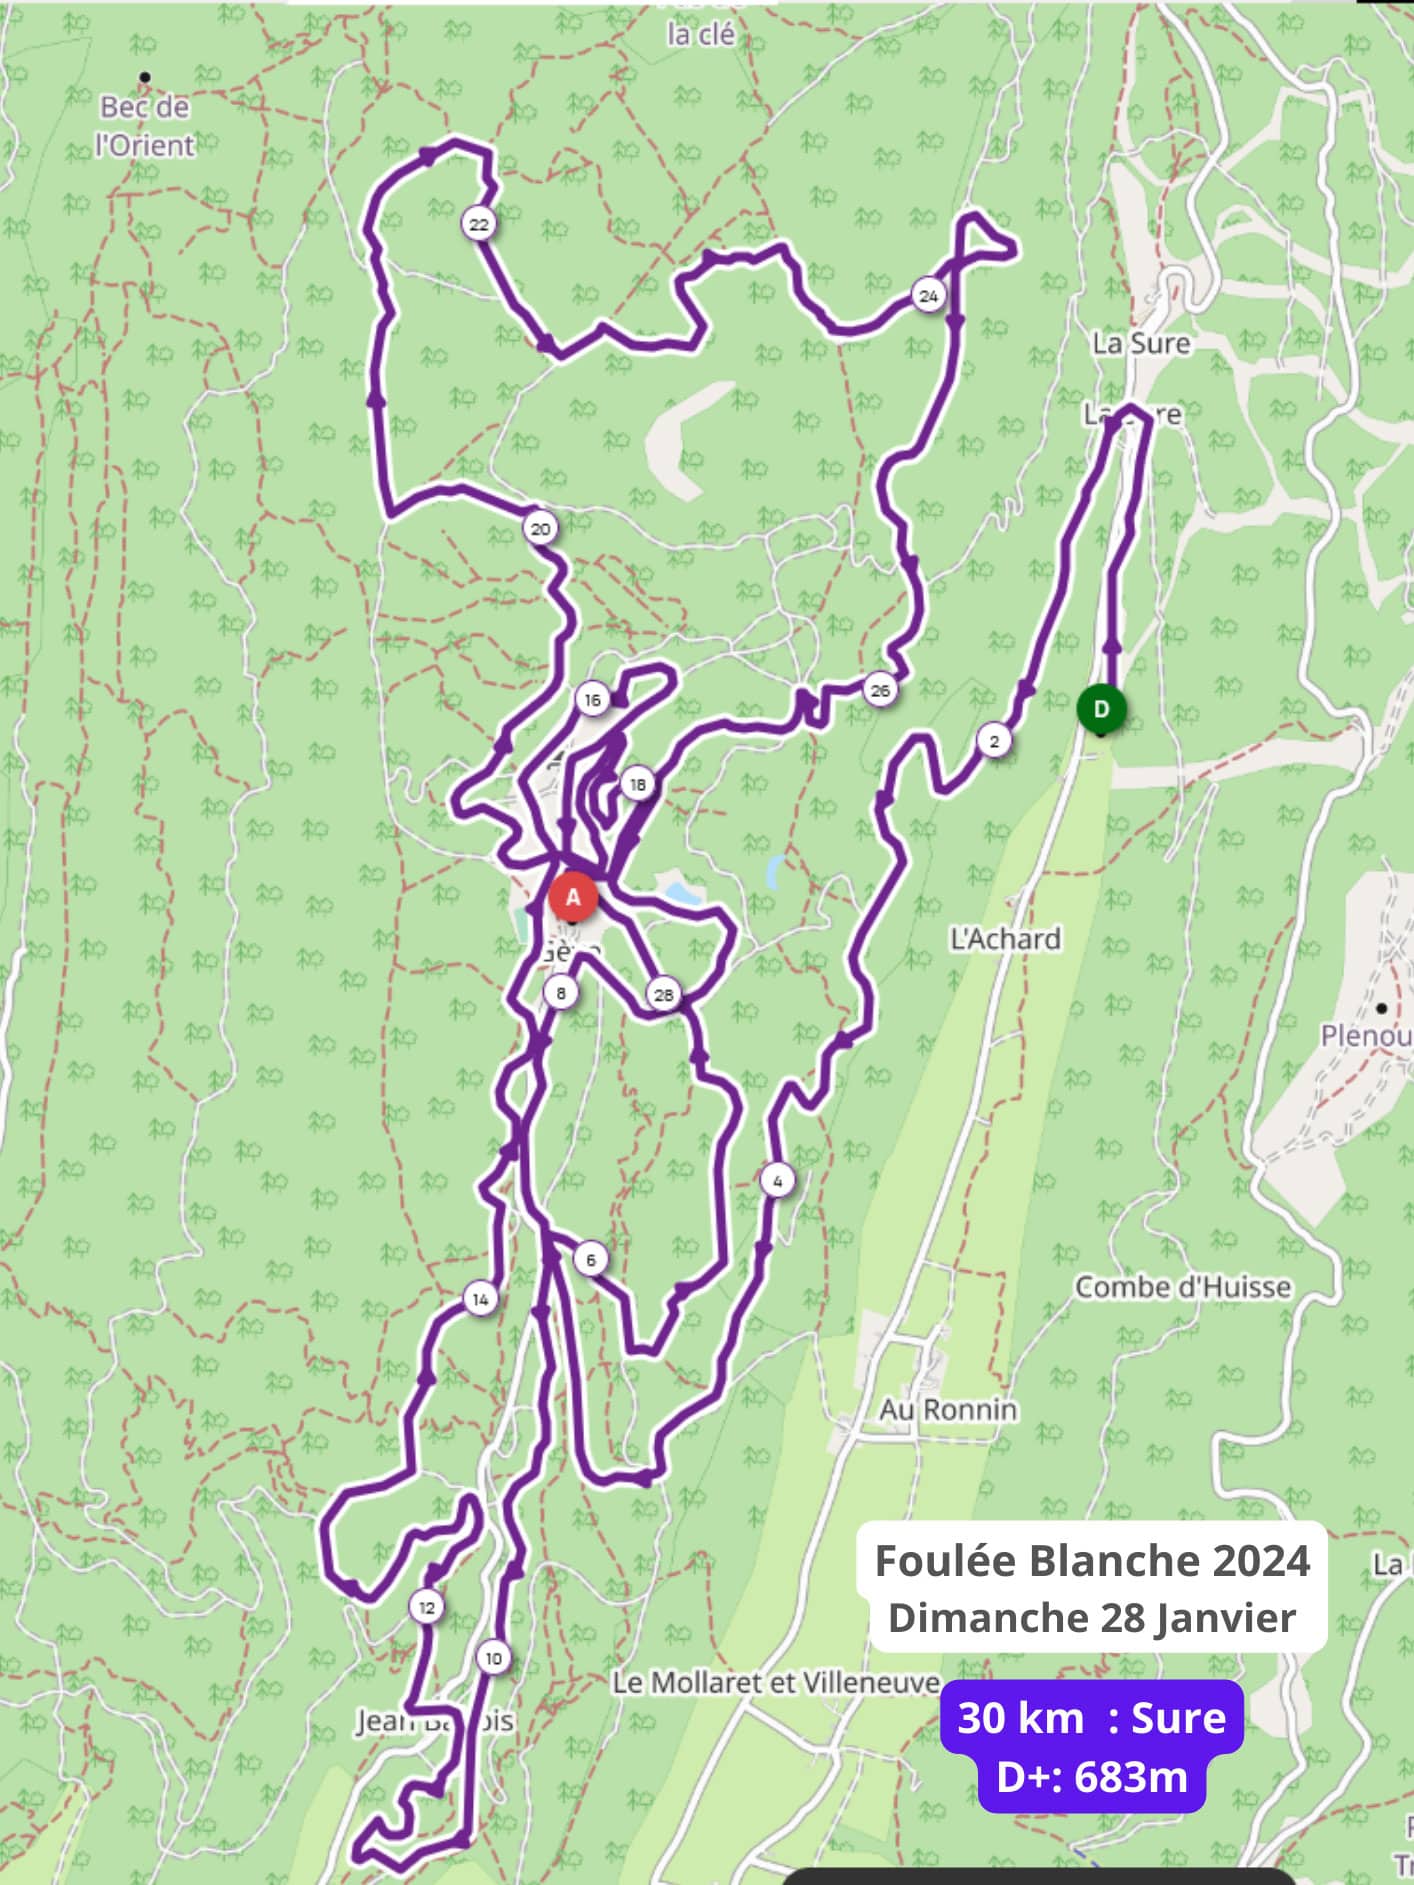 Foulée Blanche 2024 plan course 42 km